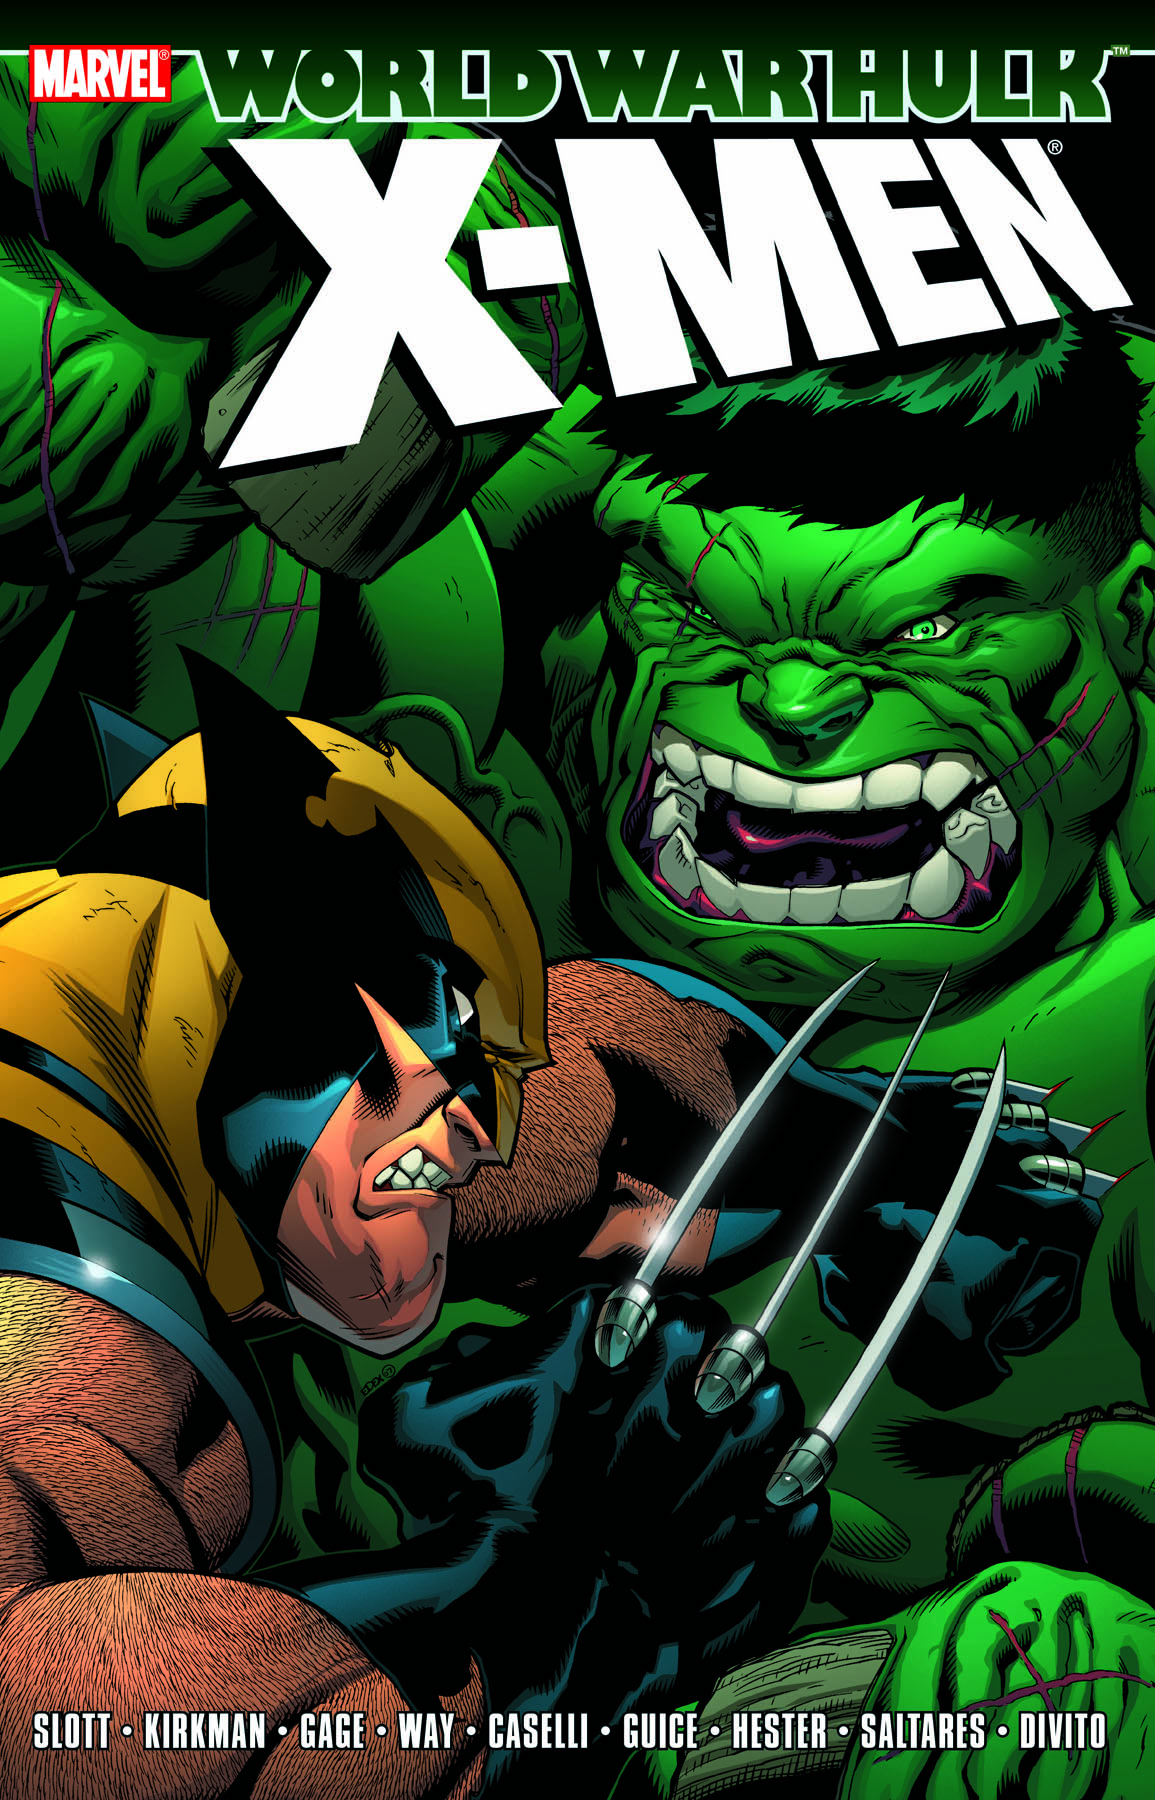 Hulk: Wwh - X-Men (Trade Paperback)